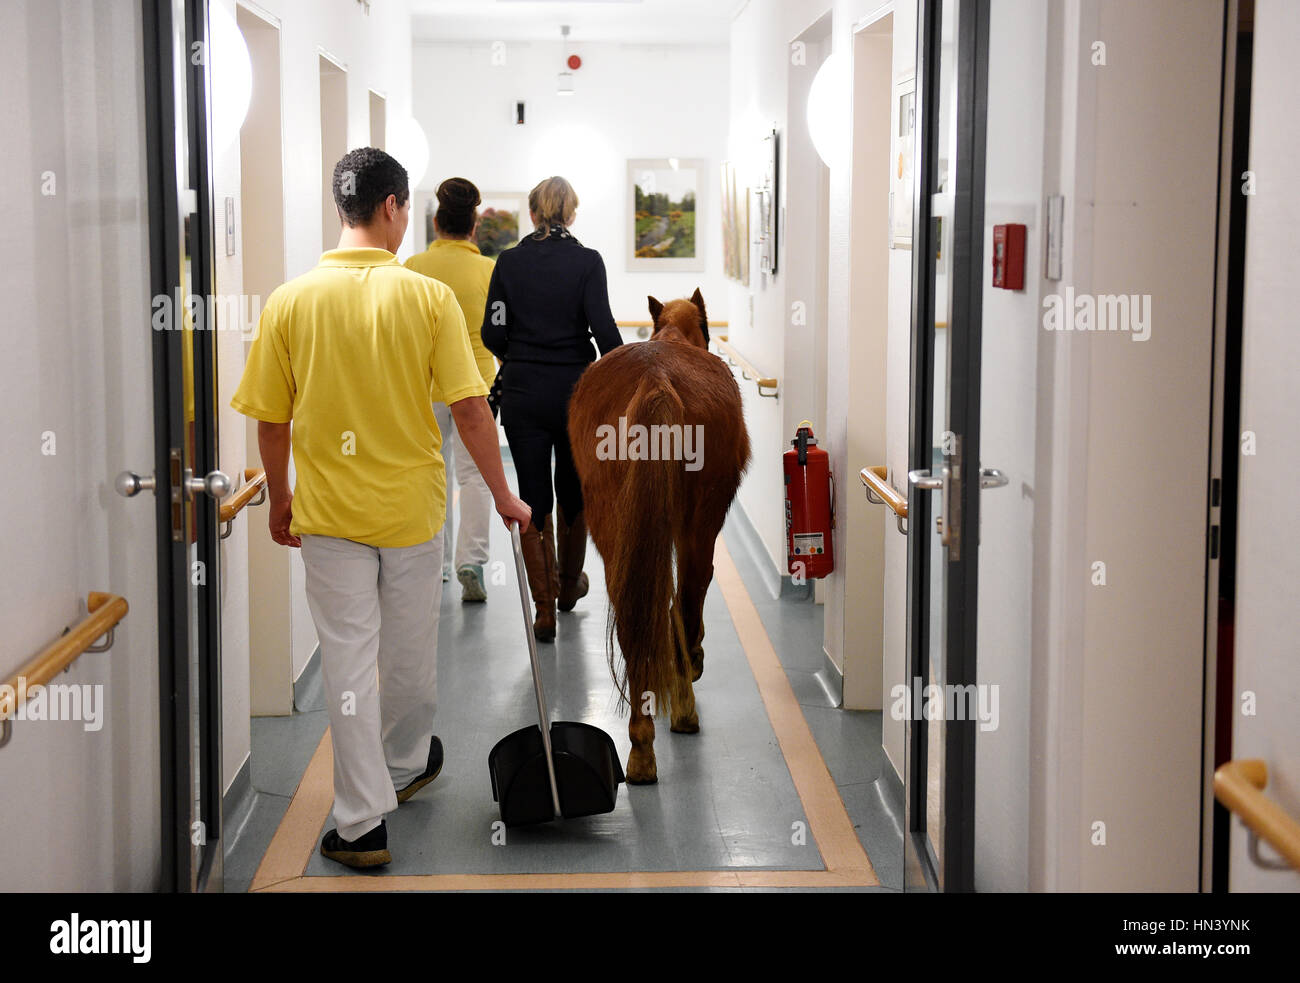 Berlino, Deutschland. 03Feb, 2017. Pony-Dame ·13· geht mit Besitzerin Hinrika Höges am 03.02.2017 durch einen Flur des Diakonie-Hospiz Wannsee a Berlino. Freitags kommt die Ponystute 13, benannt nach ·Jim Knopf und die Wilde 13·, zu einem besonderer Besuch in das Hospiz. (Zu dpa-KORR 'Tierischer Besuch: Ein Pony im Hospiz' vom 08.02.2017) Foto: Rainer Jensen/dpa/Alamy Live News Foto Stock